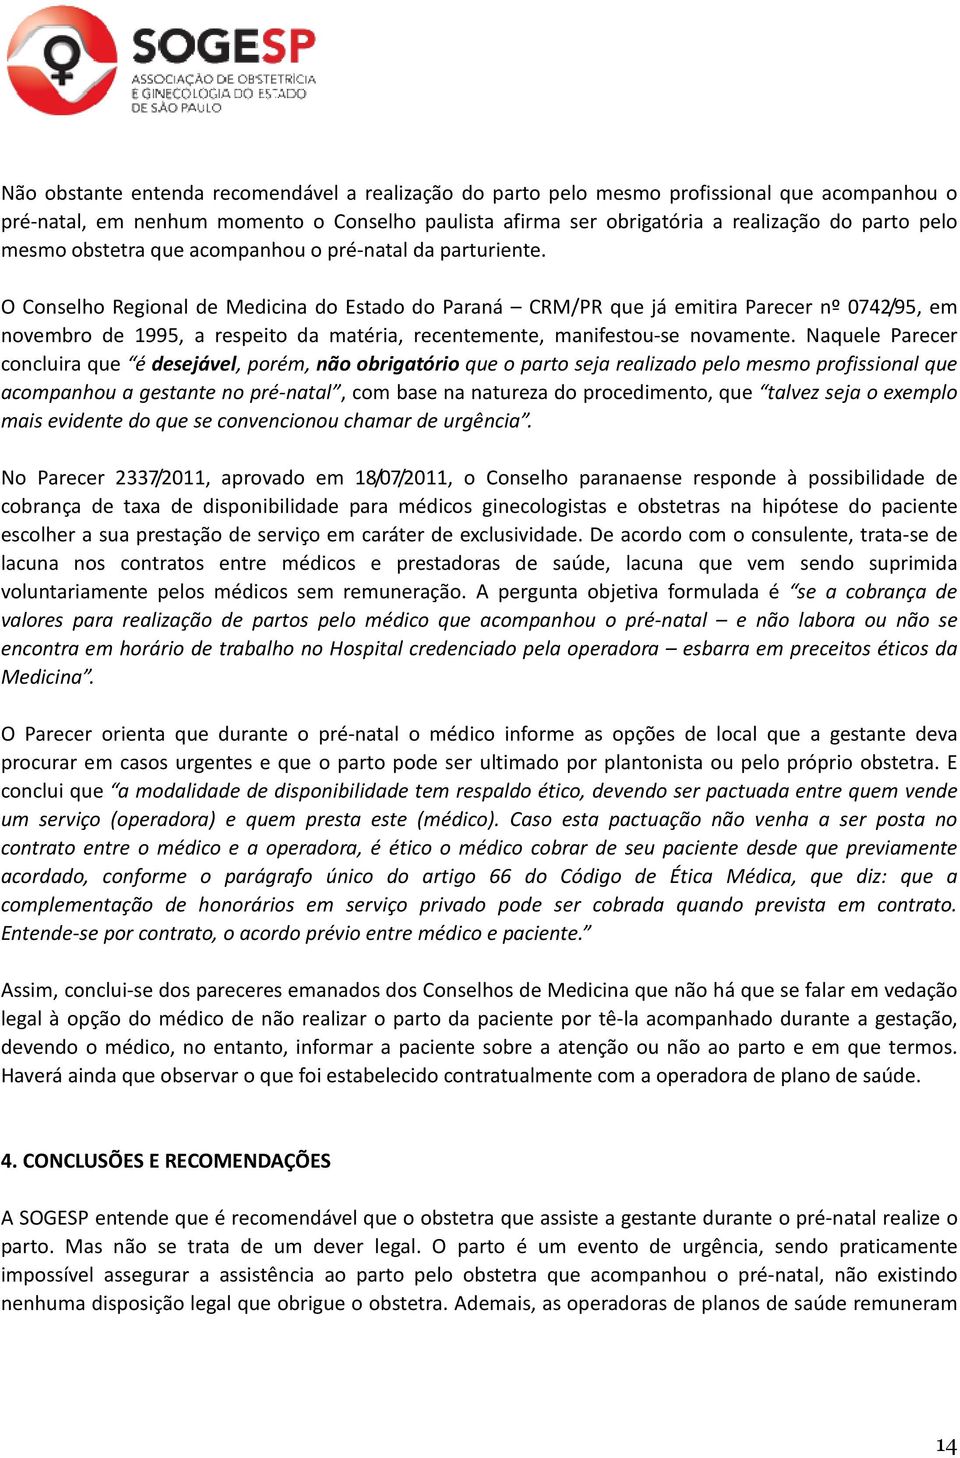 O Conselho Regional de Medicina do Estado do Paraná CRM/PR que já emitira Parecer nº 0742/95, em novembro de 1995, a respeito da matéria, recentemente, manifestou-se novamente.